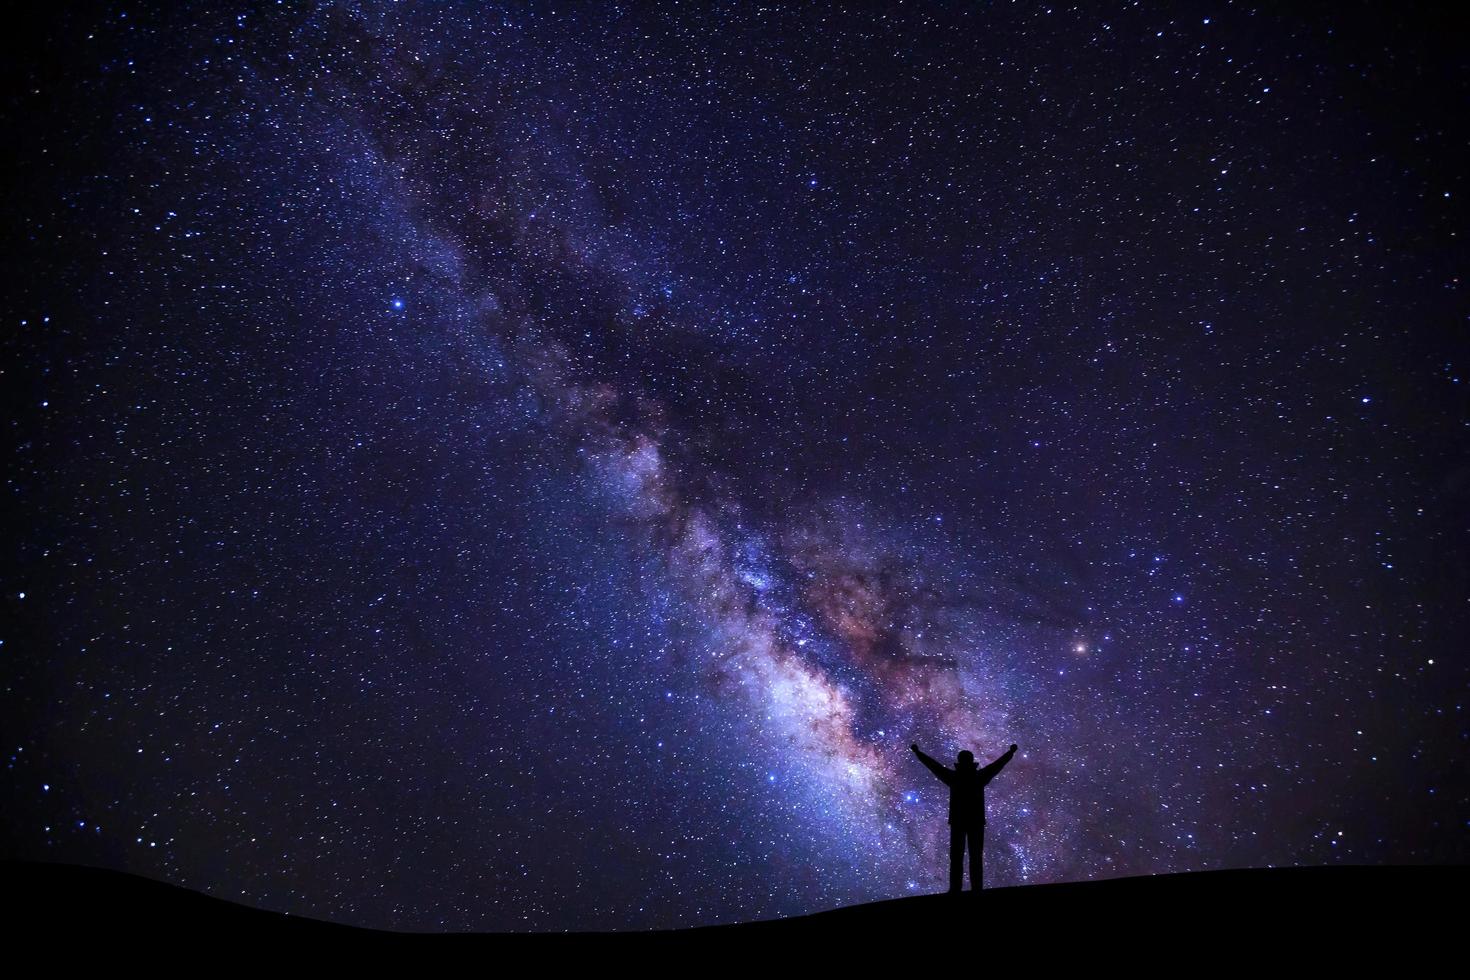 landschap met melkachtig manier, nacht lucht met sterren en silhouet van een staand sportief Mens met verheven omhoog armen Aan hoog berg. foto